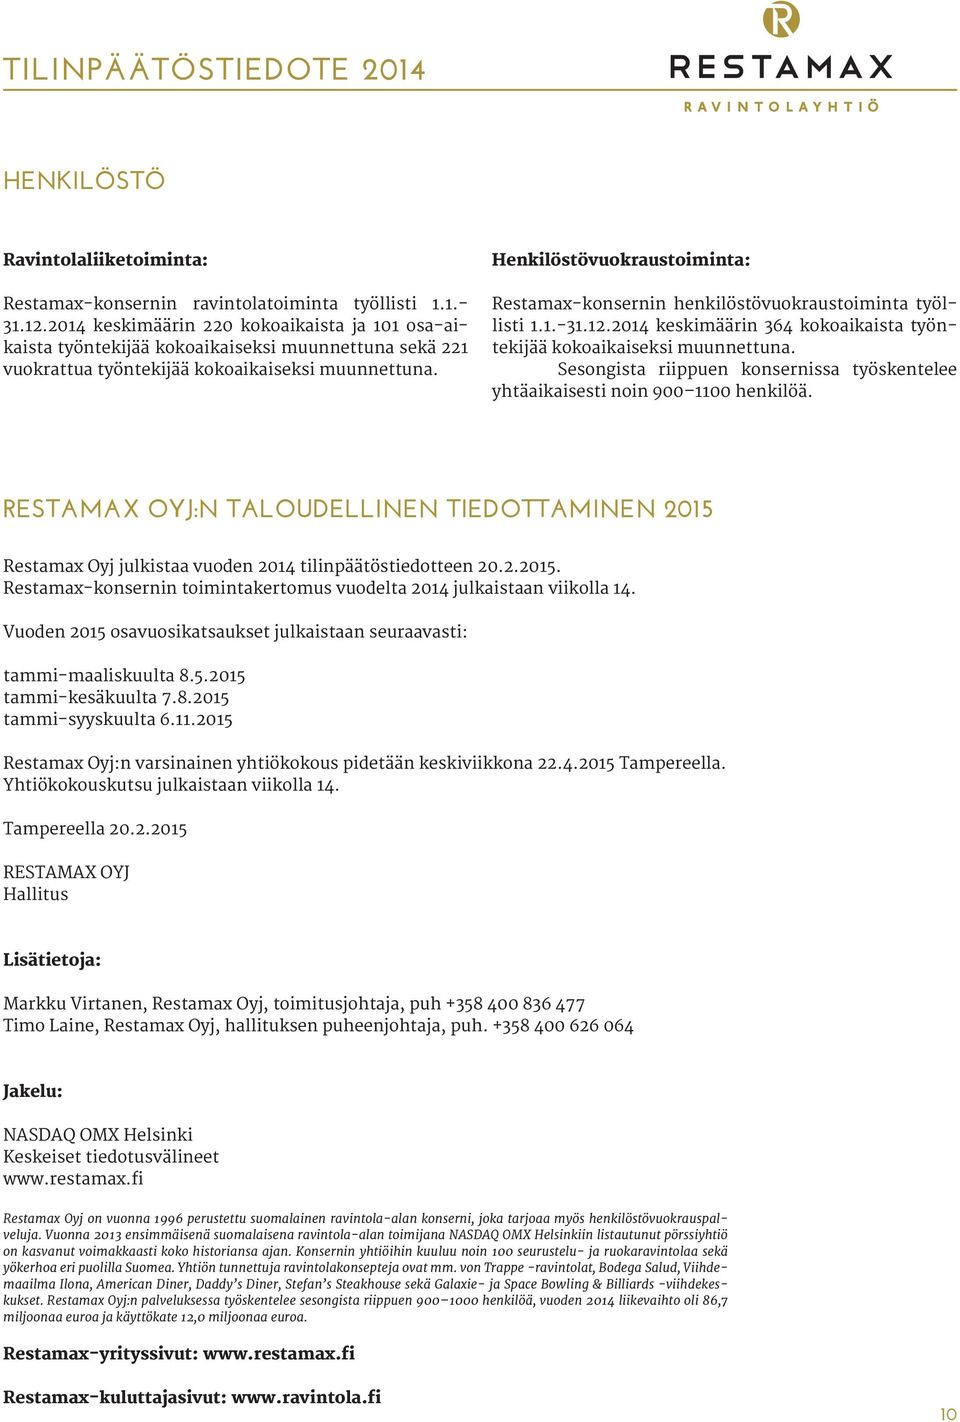 Henkilöstövuokraustoiminta: Restamax-konsernin henkilöstövuokraustoiminta työllisti 1.1.-31.12.2014 keskimäärin 364 kokoaikaista työntekijää kokoaikaiseksi muunnettuna.